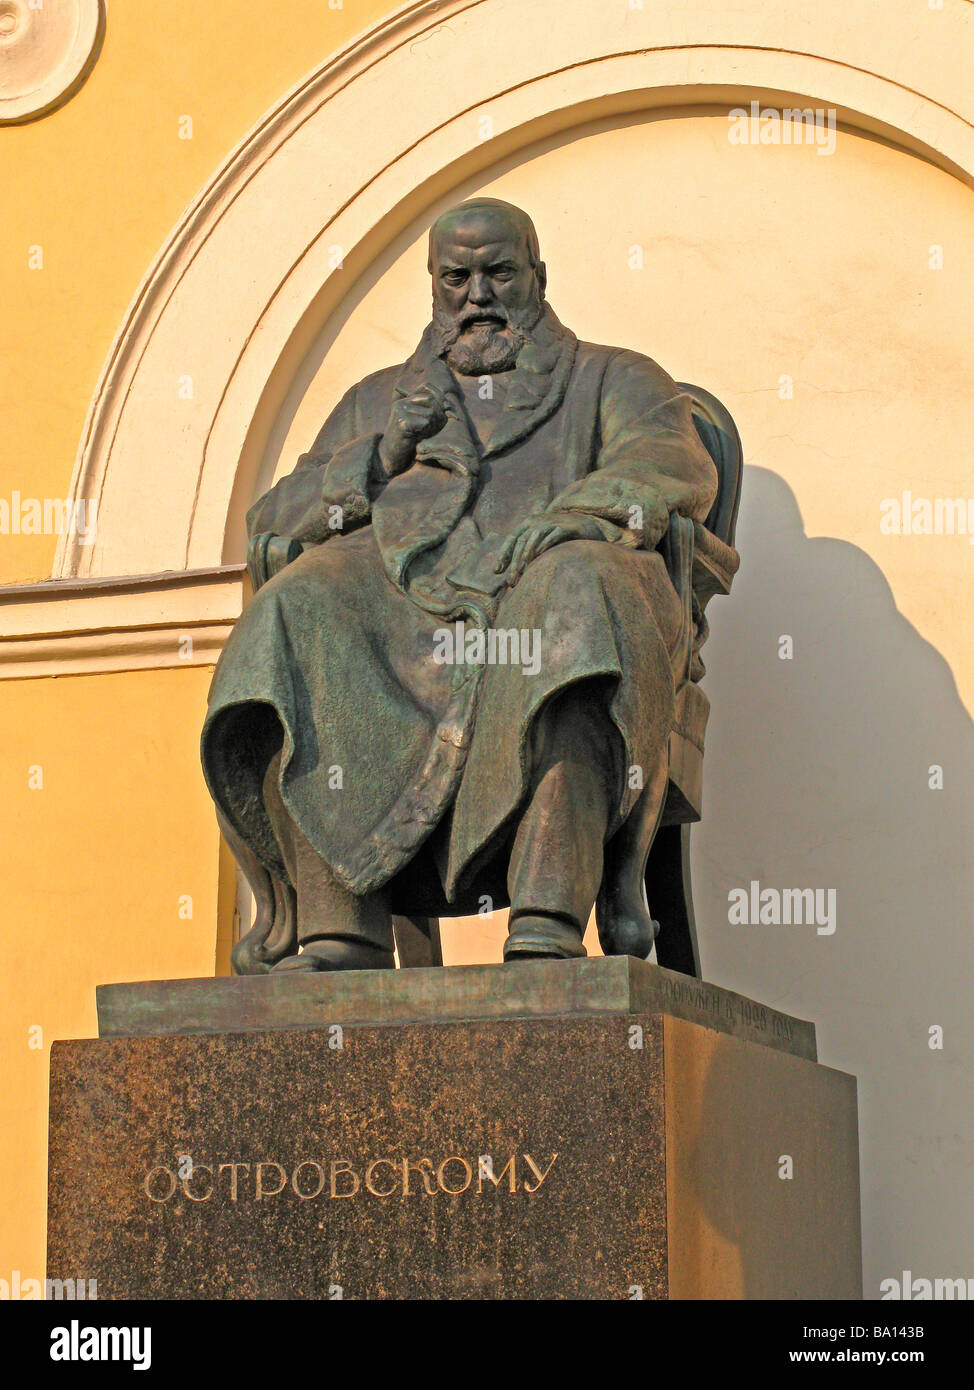 Statua al famoso scrittore russo Ostrovskii Foto Stock